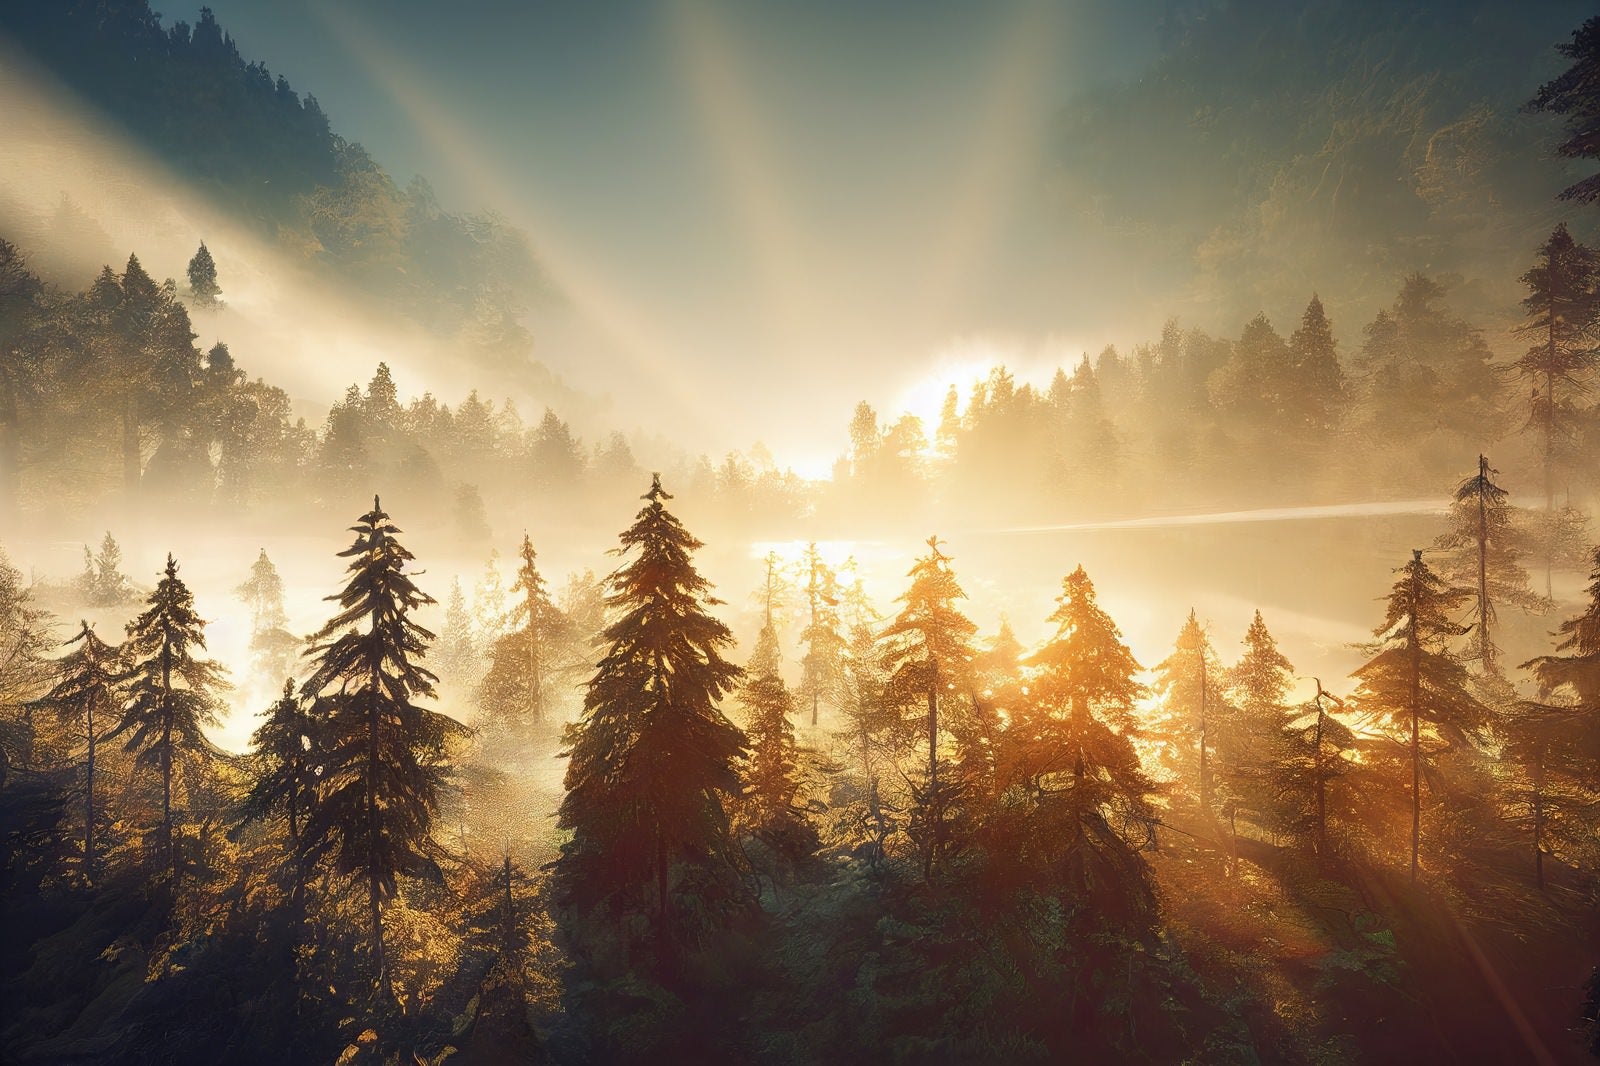 「光輝く森」の写真